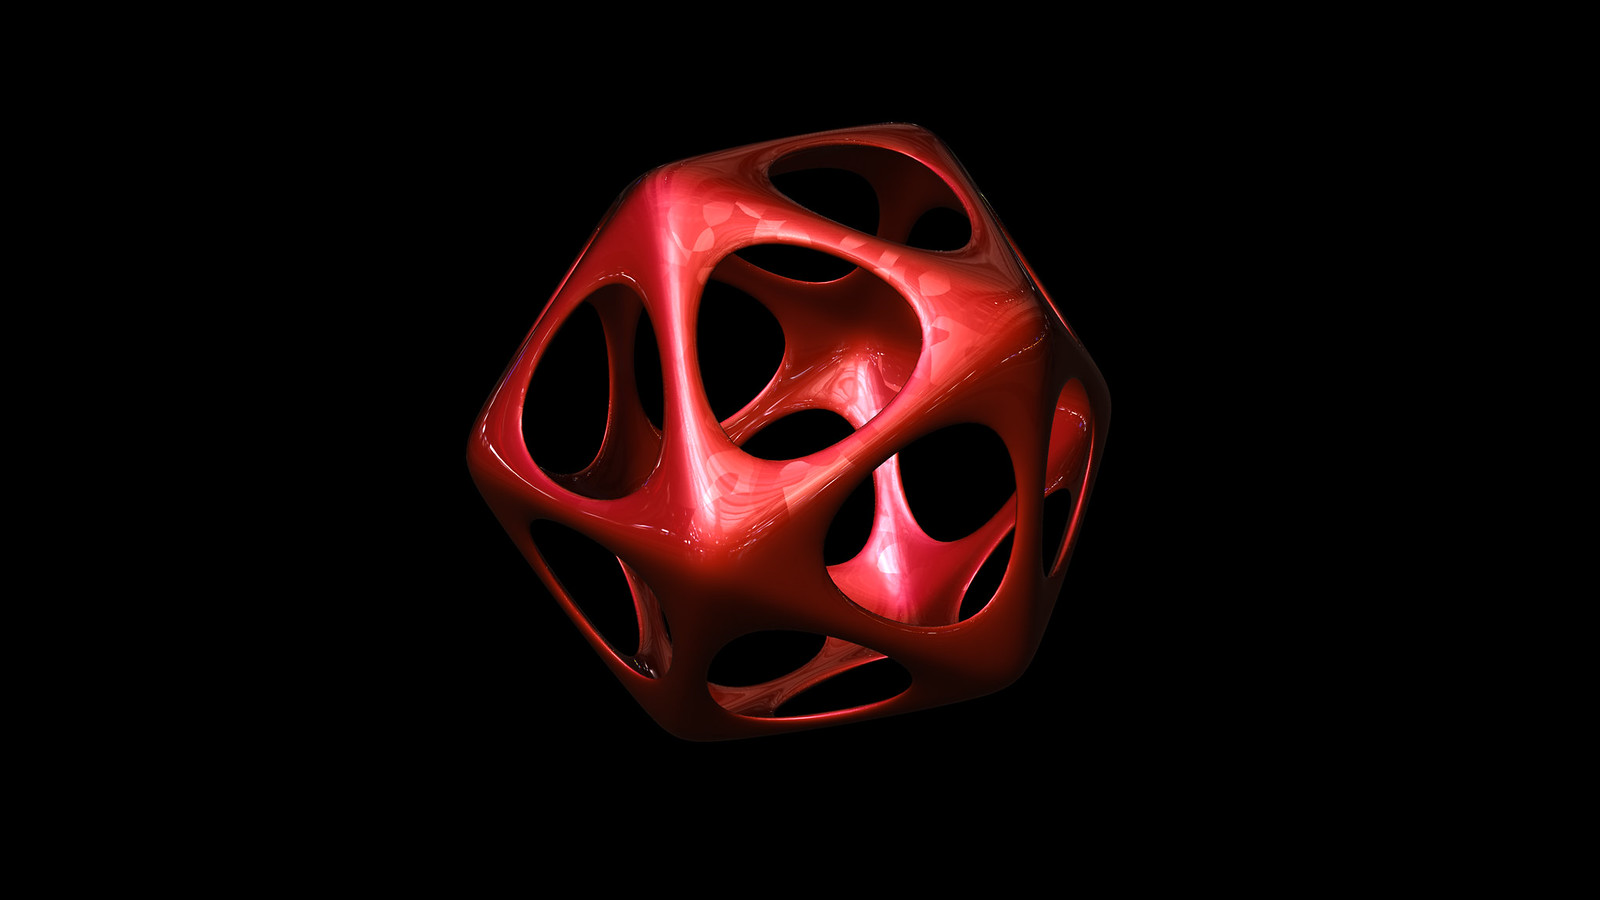 Icosahedron soft